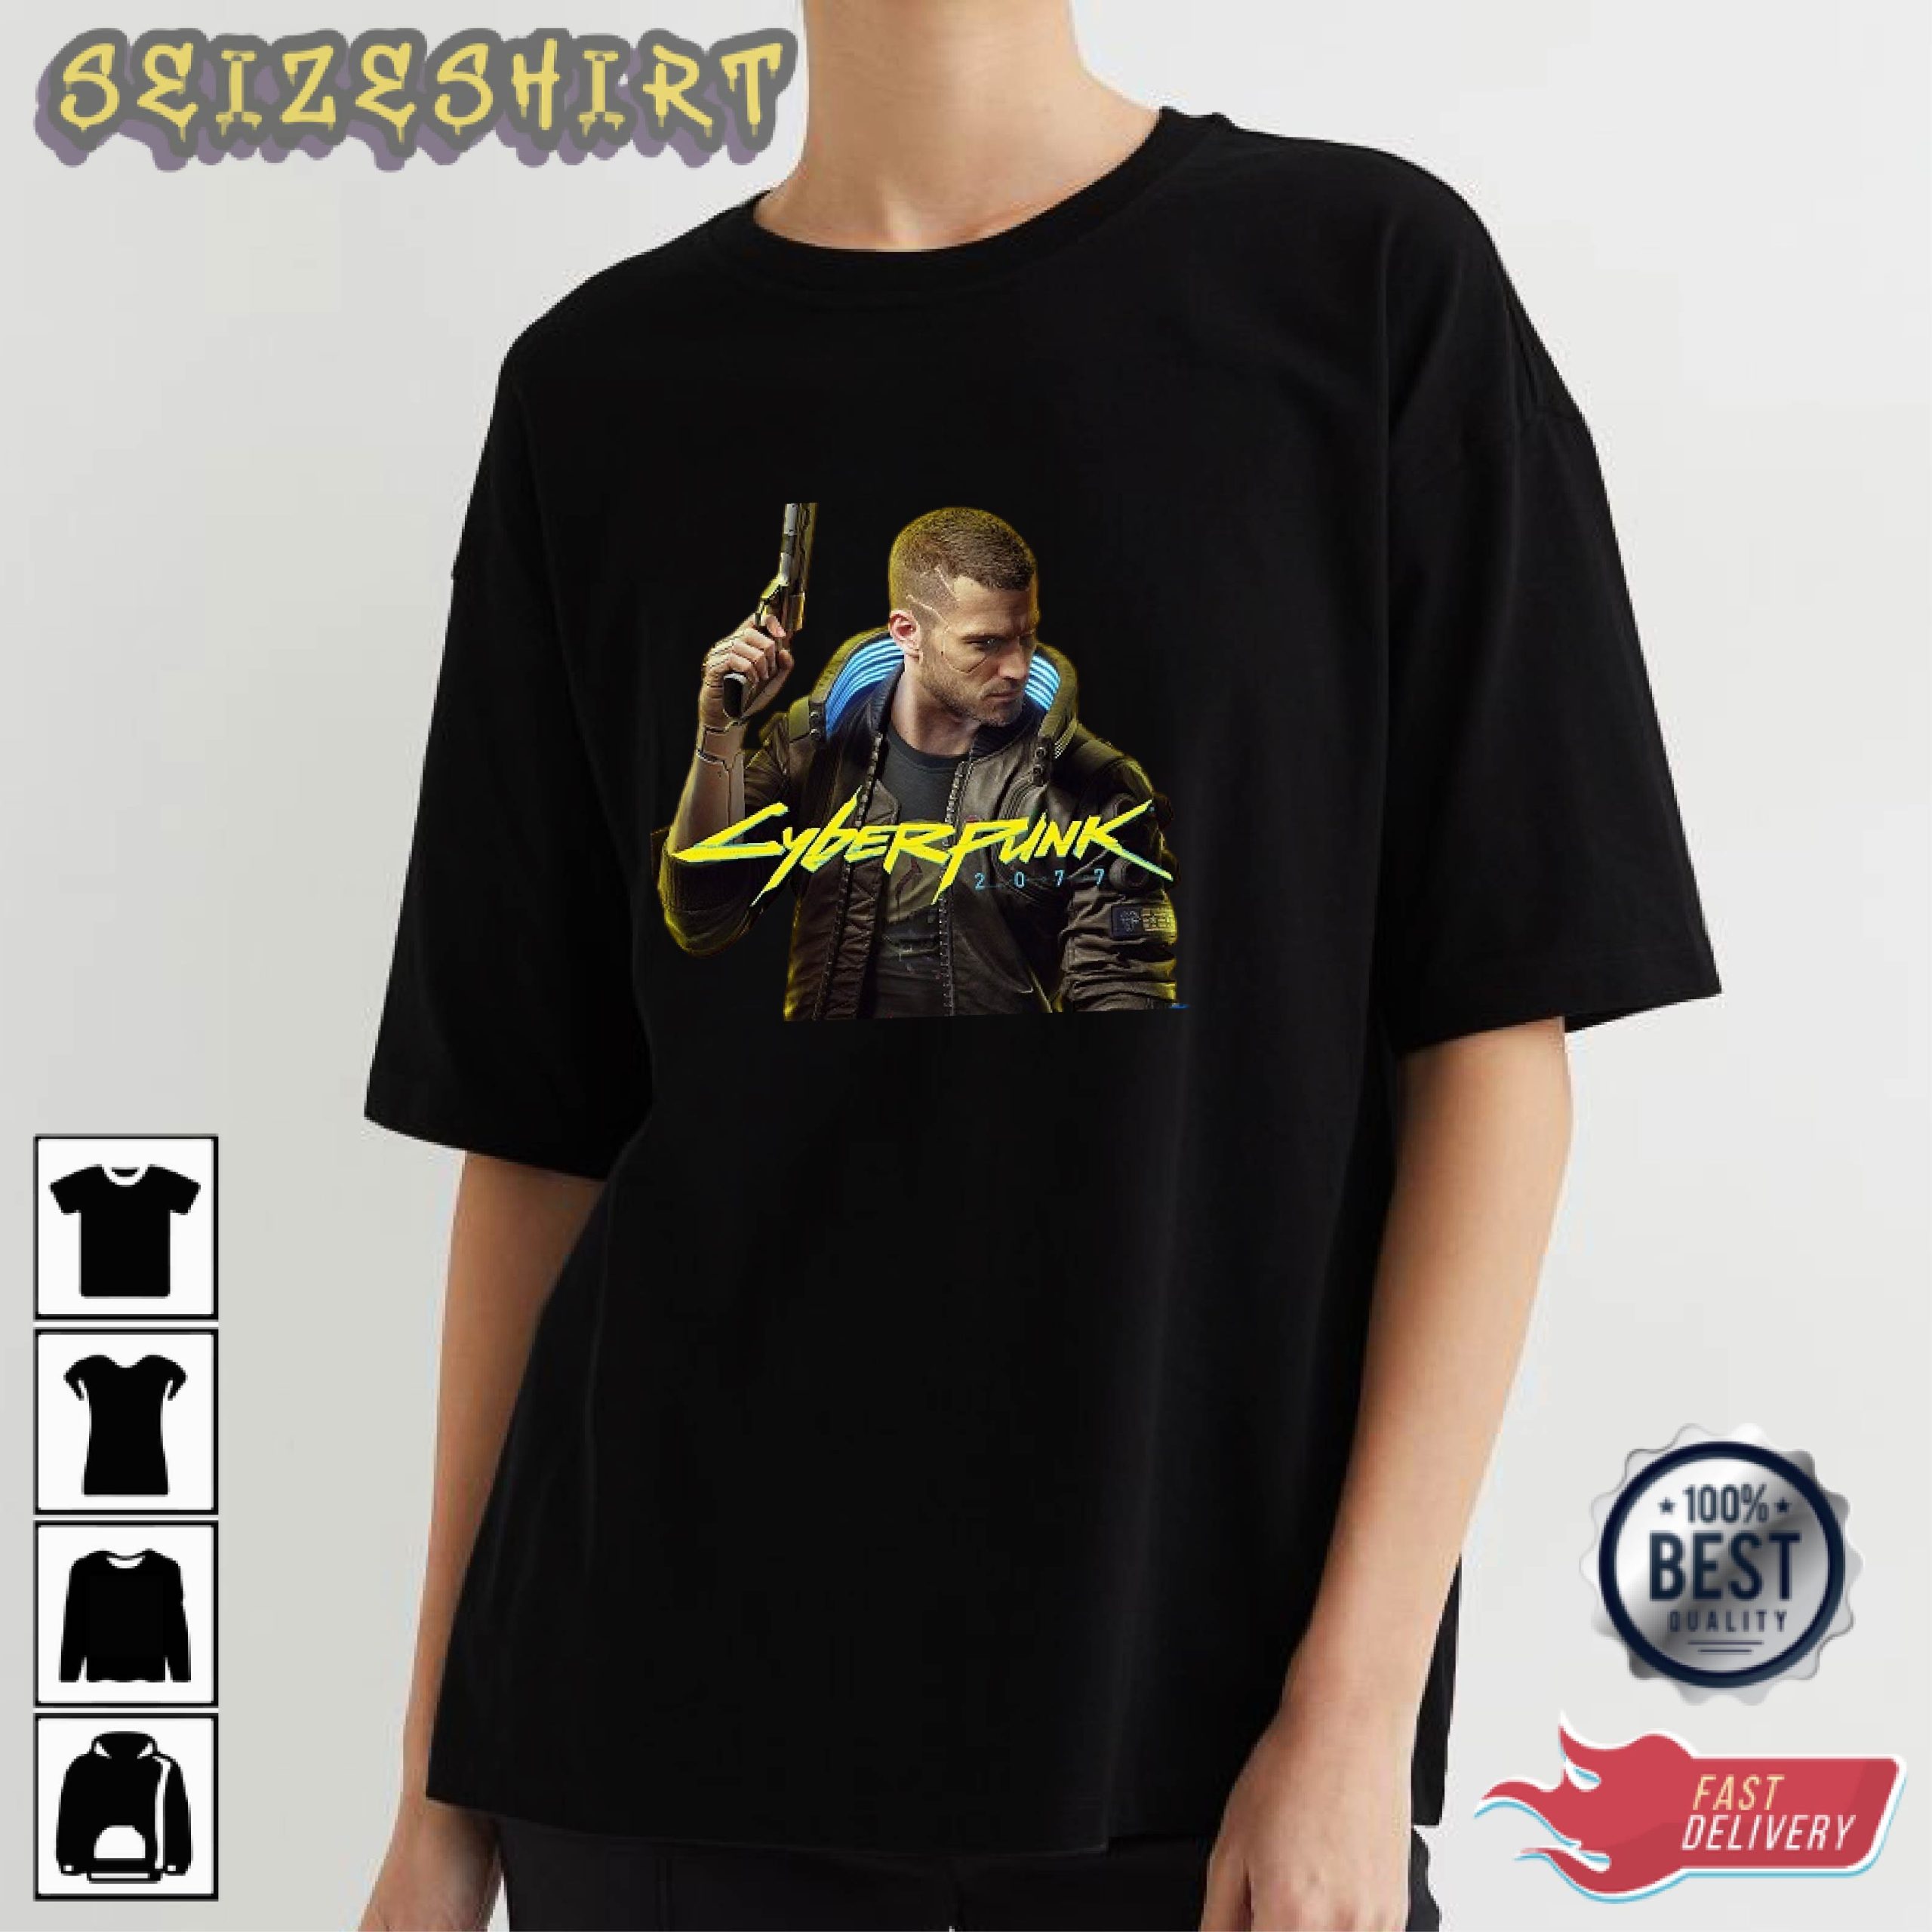 Cyberpunk Cool Gun HOT Tee Shirt Long Sleeve Shirt